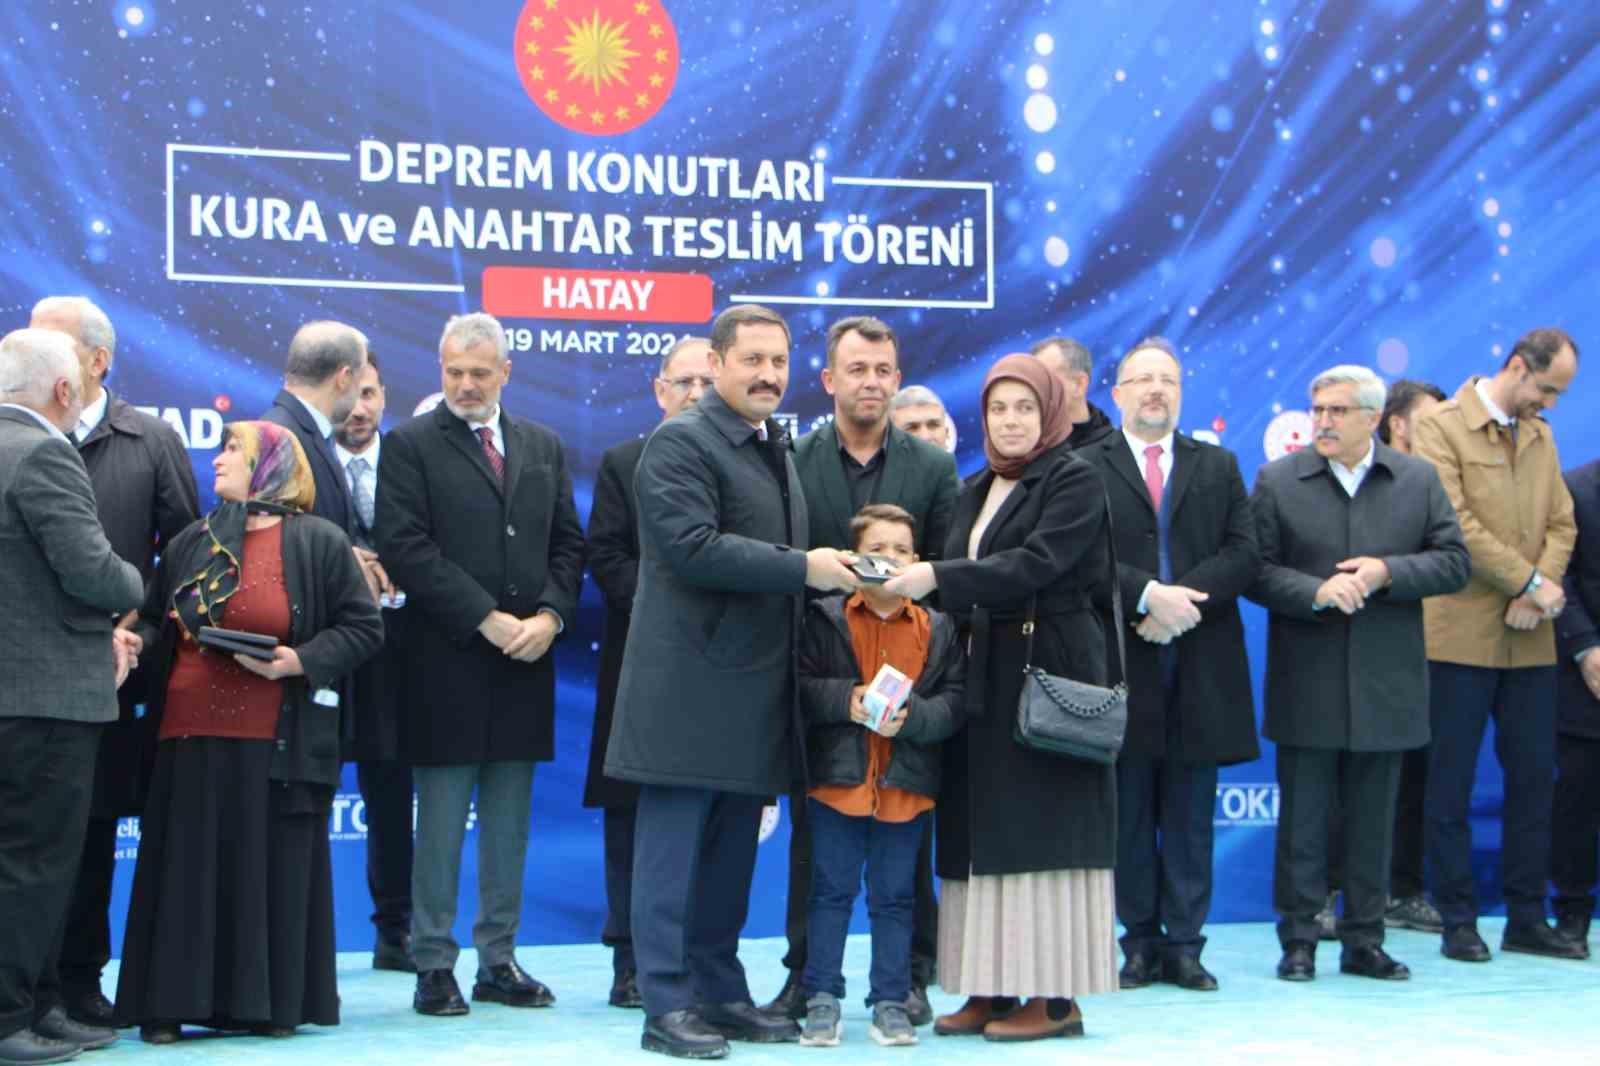 Çevre, Şehircilik ve İklim Değişikliği Bakanı Mehmet Özhaseki, Türkiye Toplu Konut İdaresi (TOKİ) tarafından son 22 yılda 1 milyon 340 bin konut inşa edildiğini duyurdu.